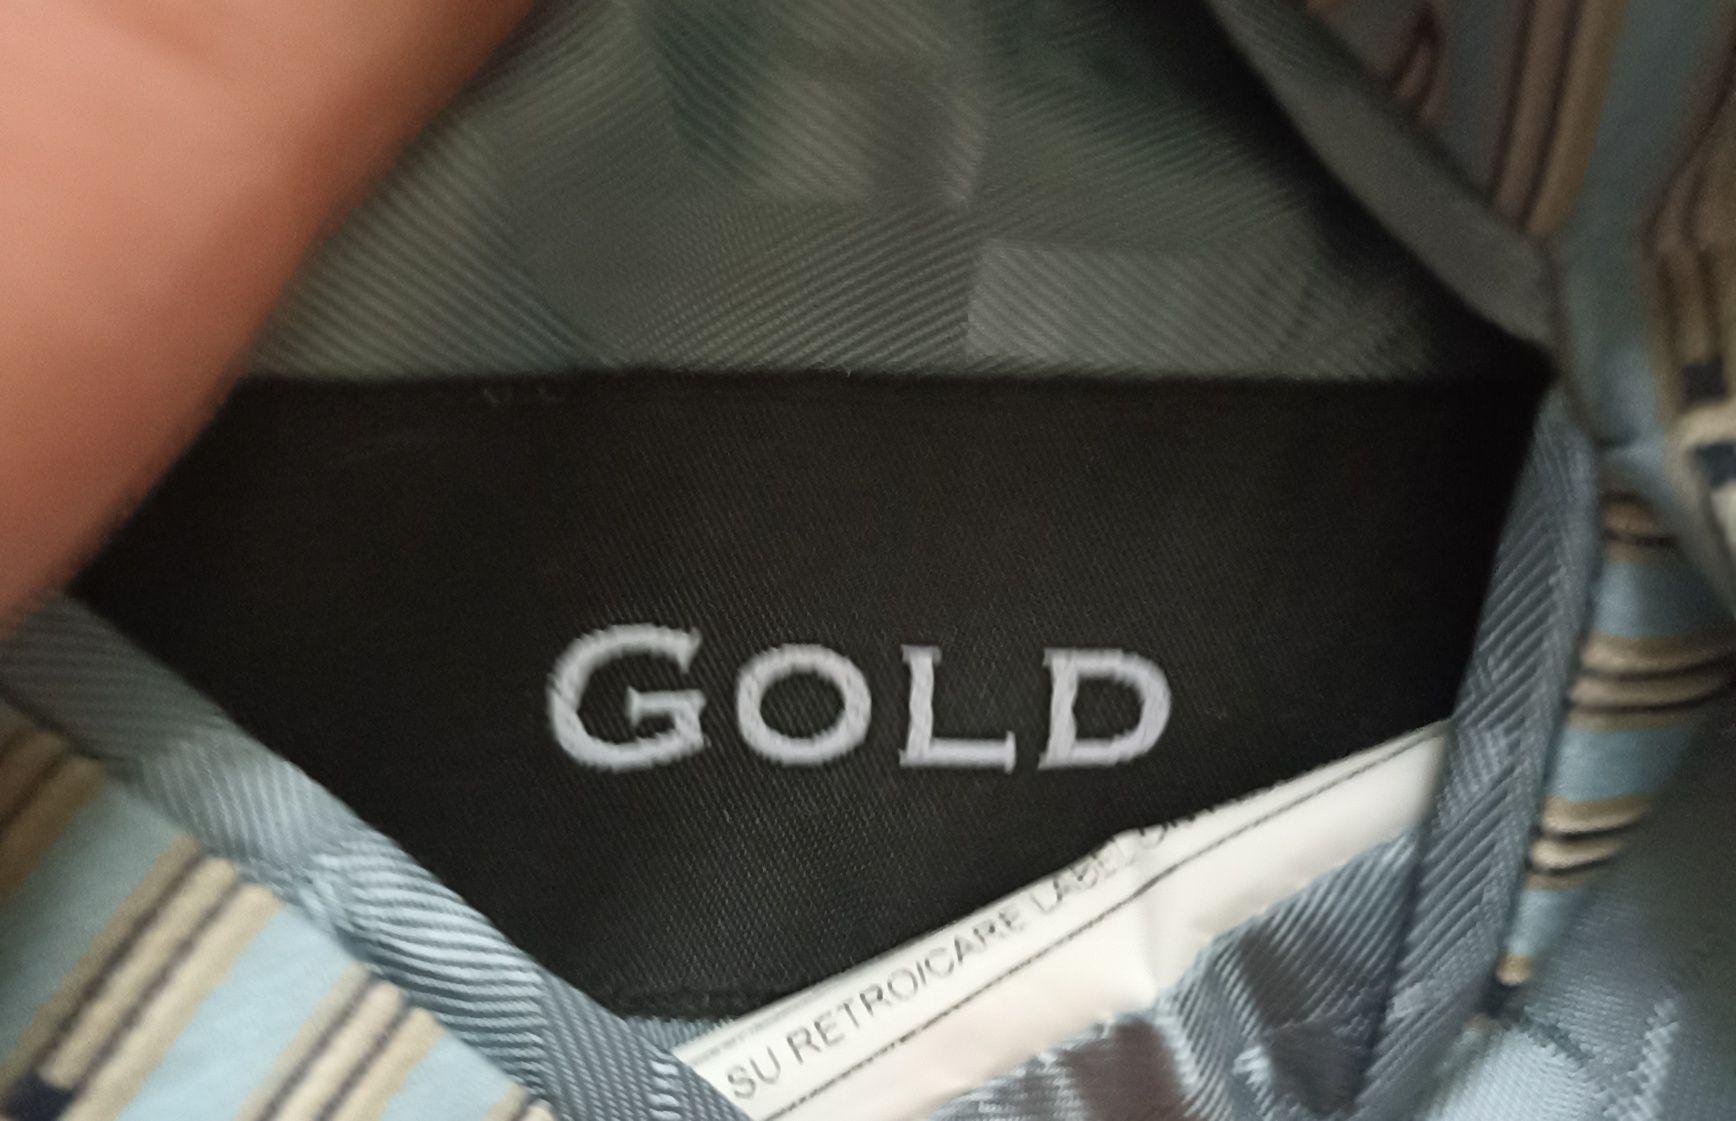 Dolce gabbana gold пиджак